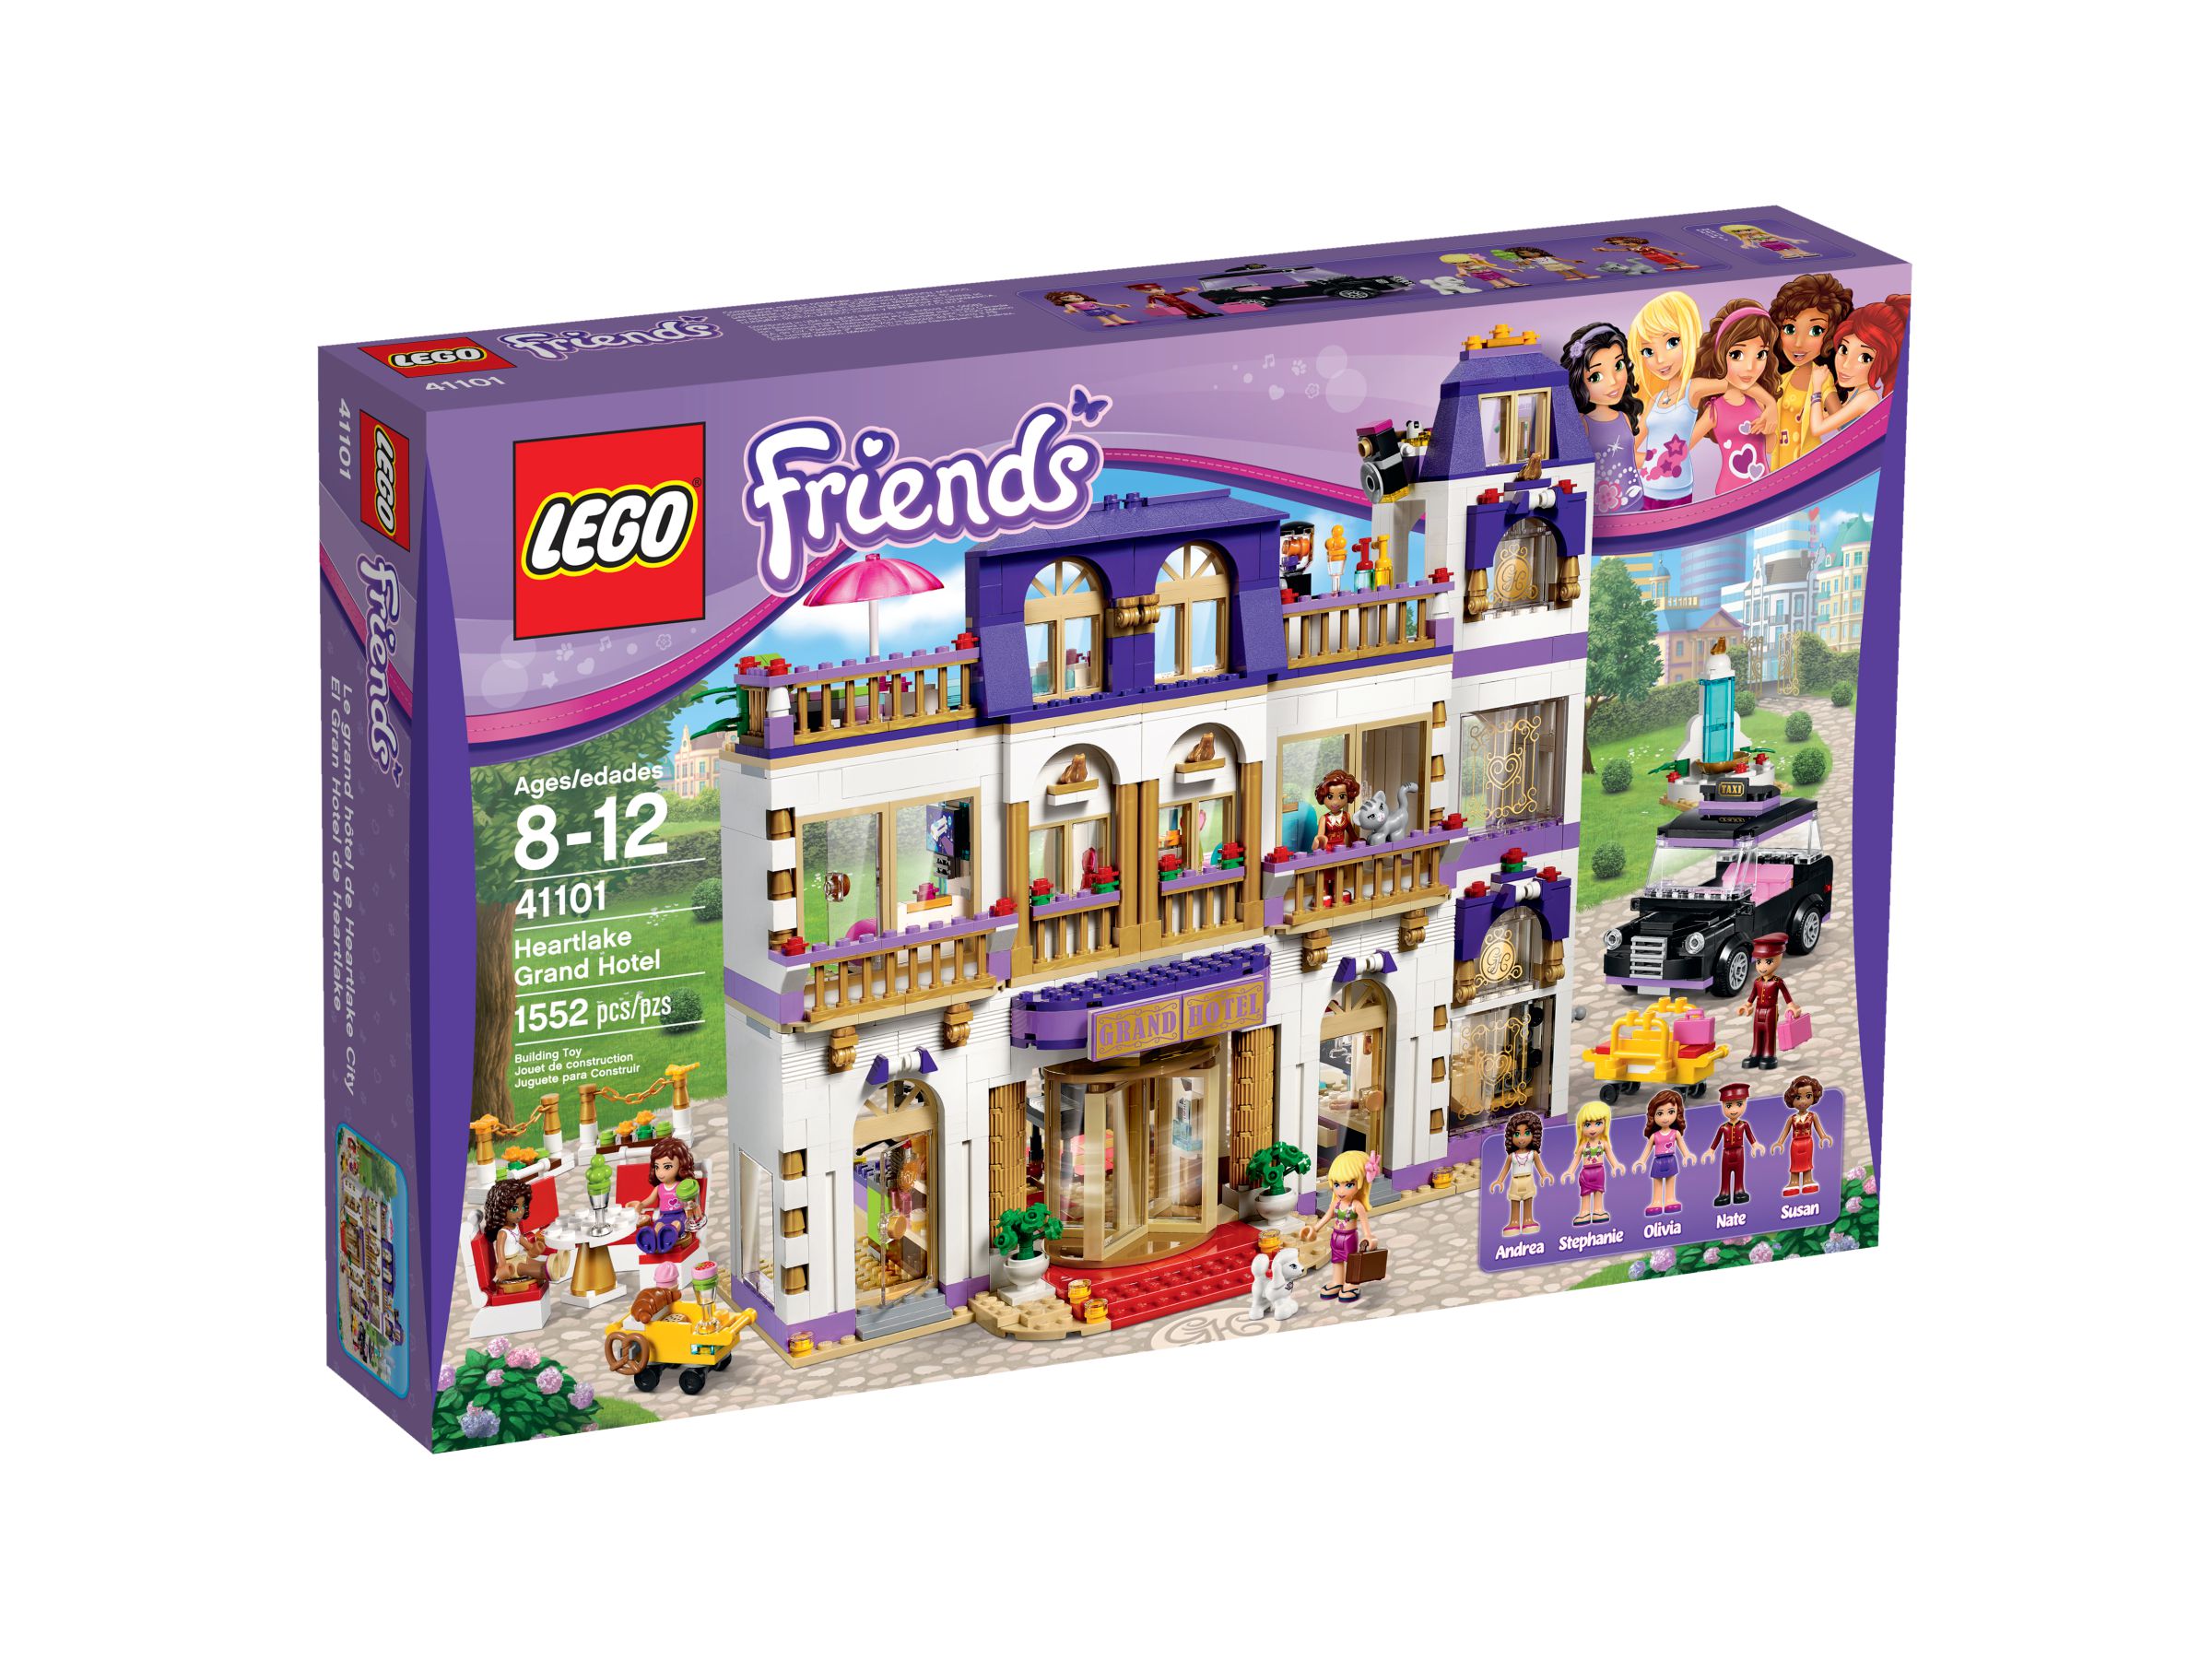 LEGO Friends 41101 Heartlake Großes Hotel LEGO_41101_alt1.jpg